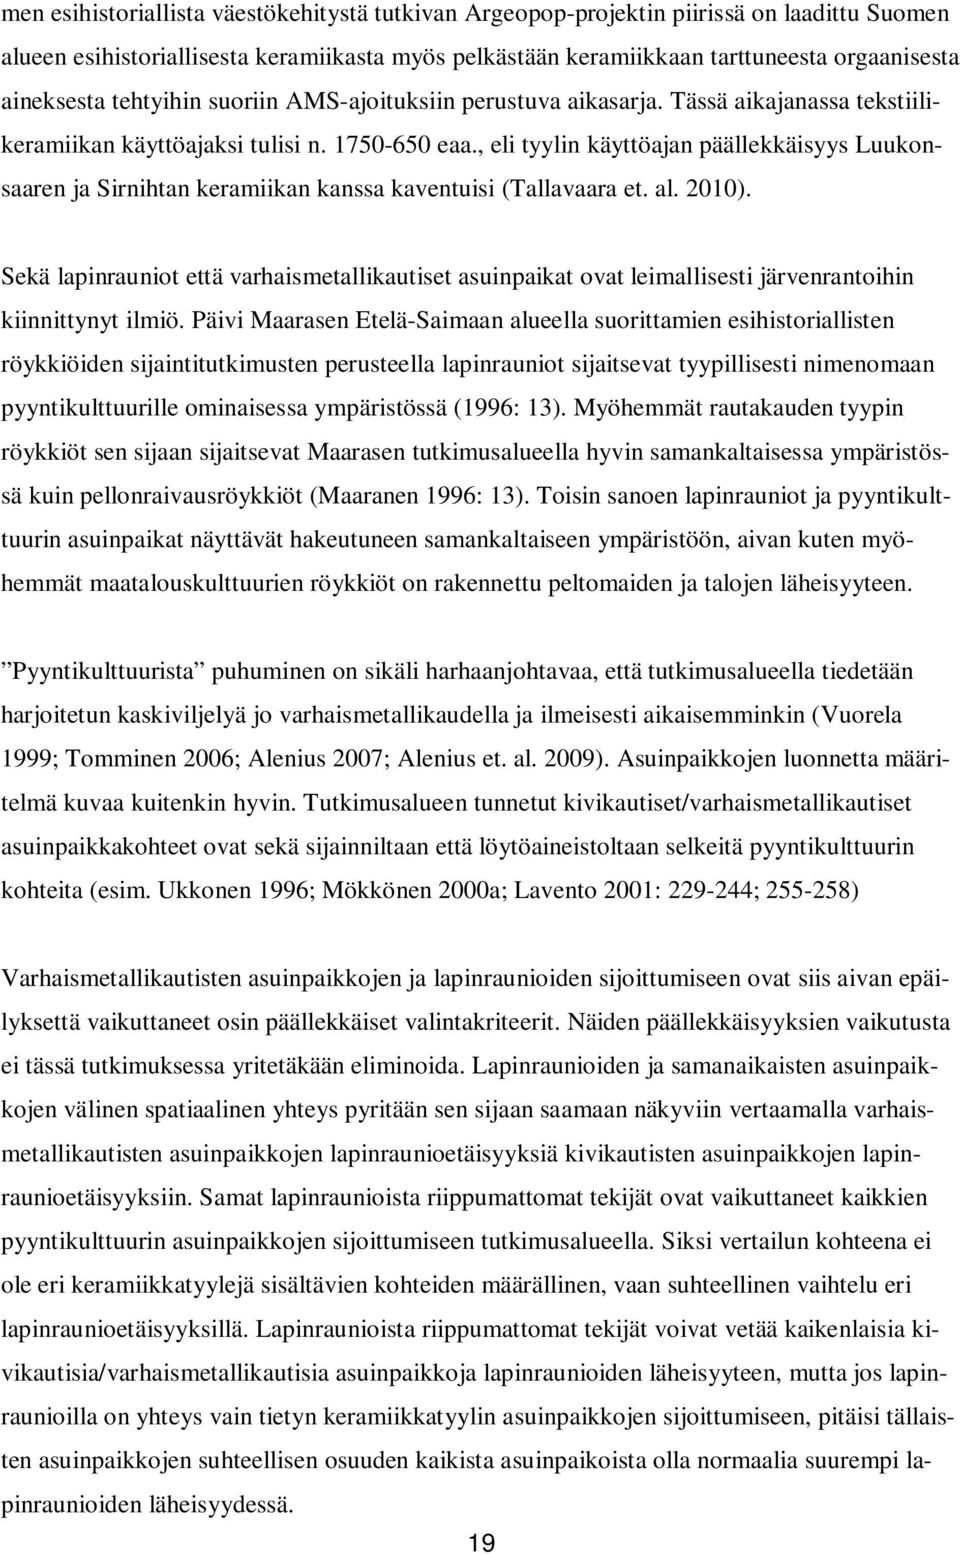 , eli tyylin käyttöajan päällekkäisyys Luukonsaaren ja Sirnihtan keramiikan kanssa kaventuisi (Tallavaara et. al. 2010).